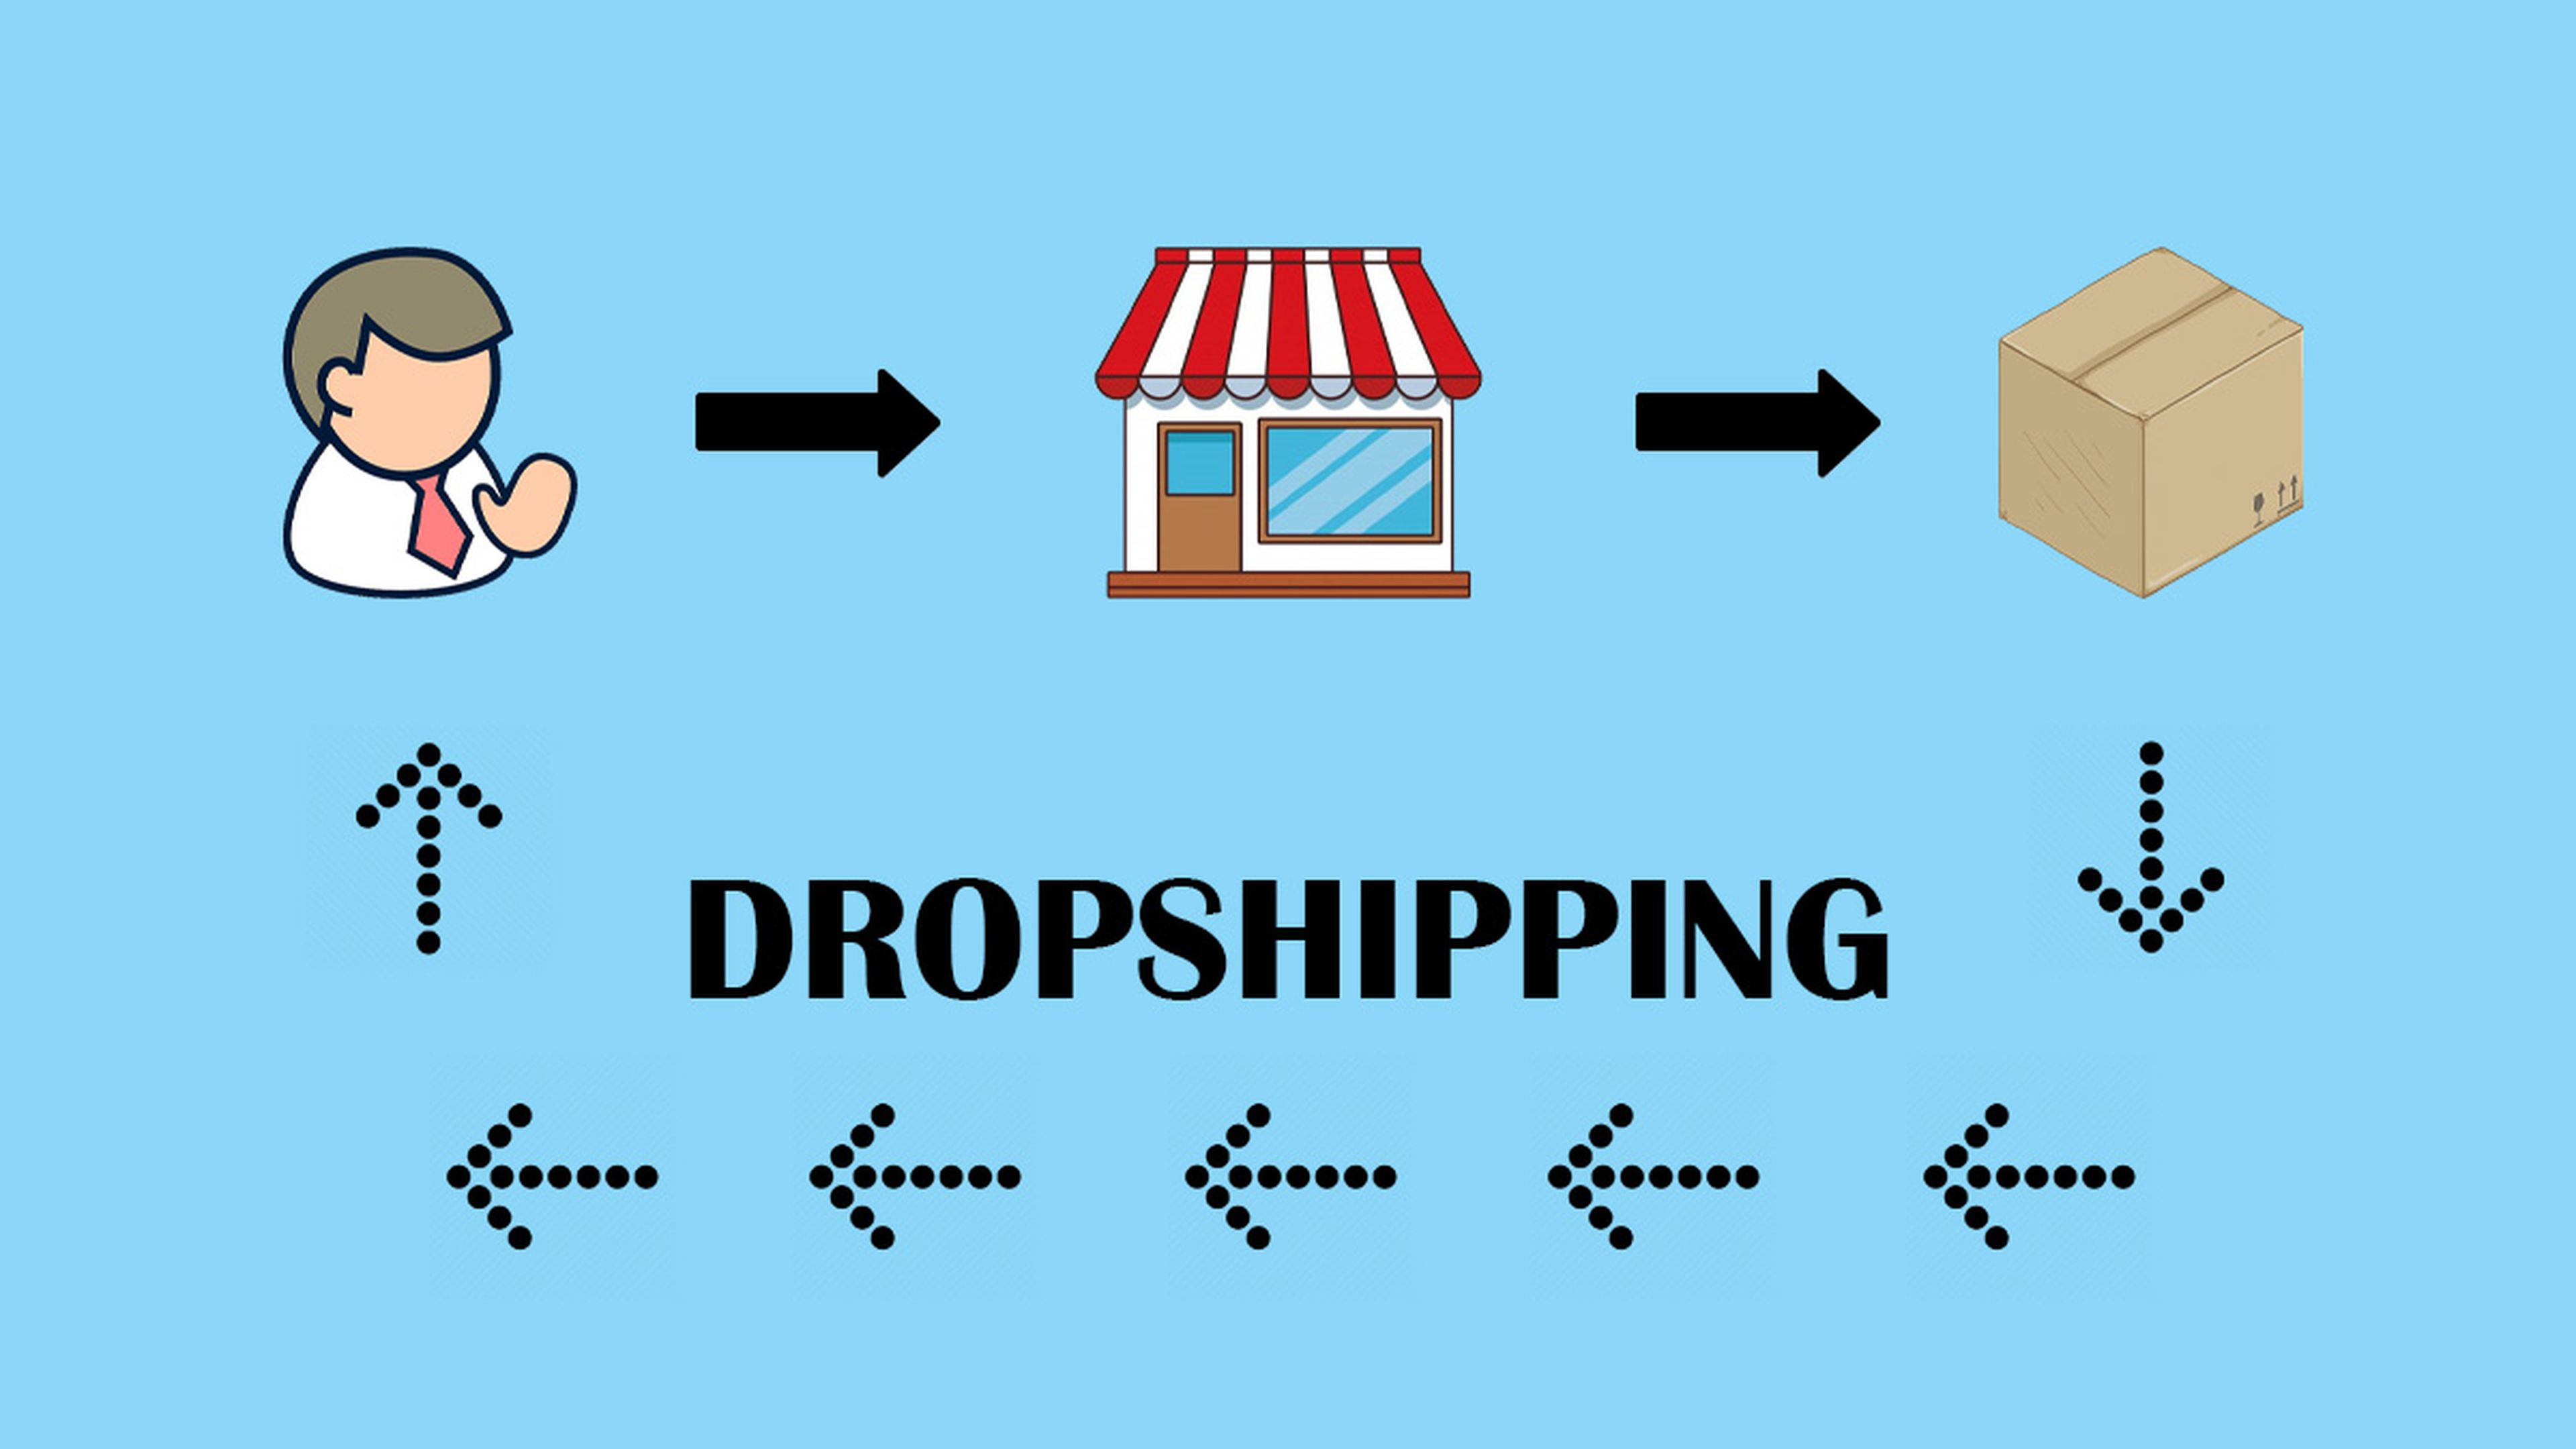 Dropshipping explicación gráfica